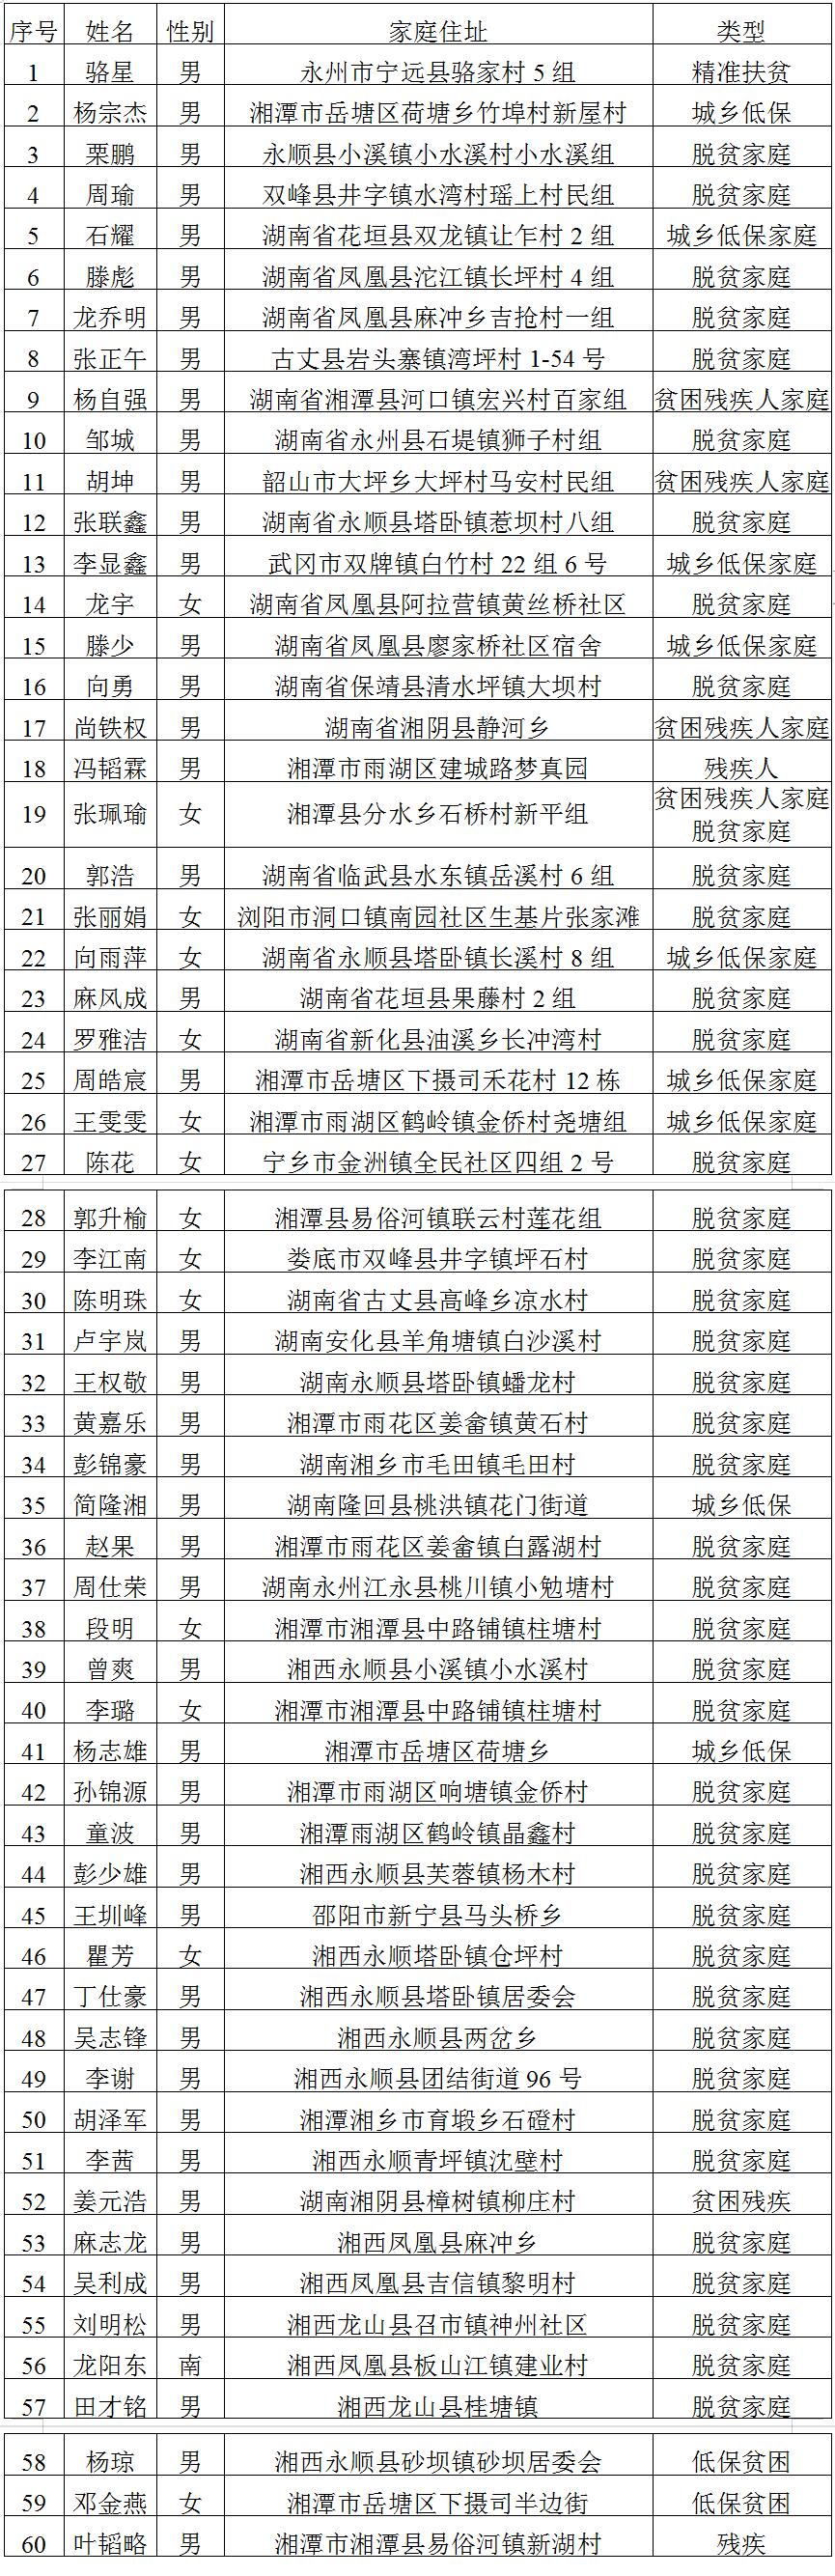 湘潭技师学院2023届毕业生求职创业补贴申请名单公示